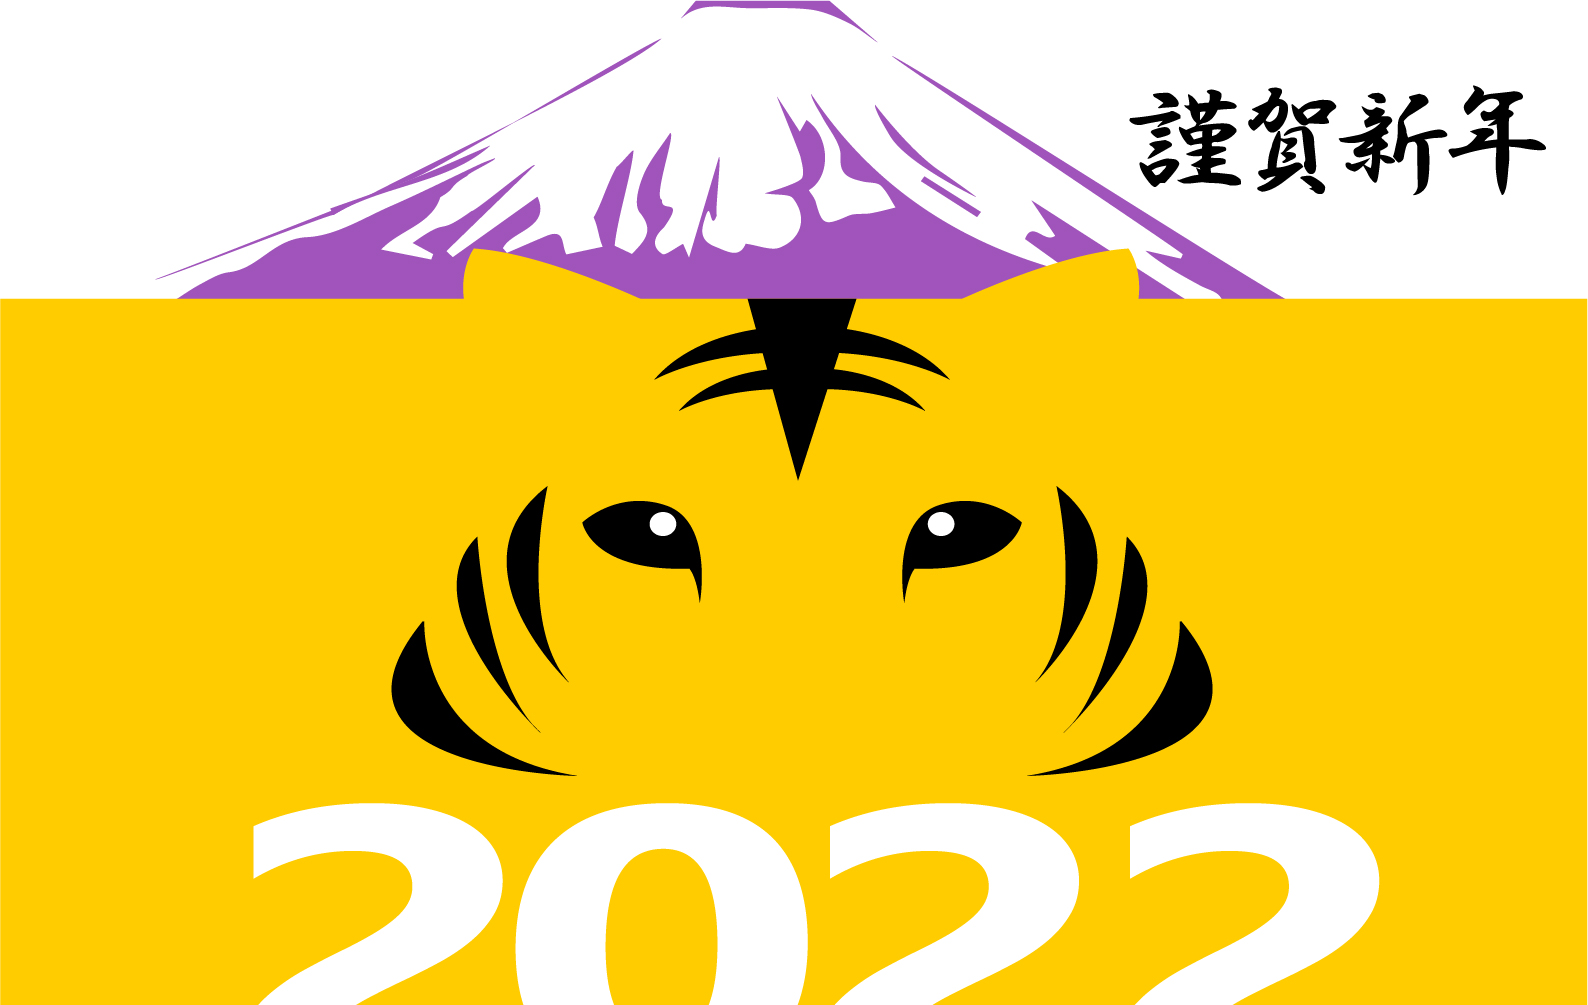 紫富士と虎がかっこよく描かれたデザイン性の高いおしゃれでクールな年賀状